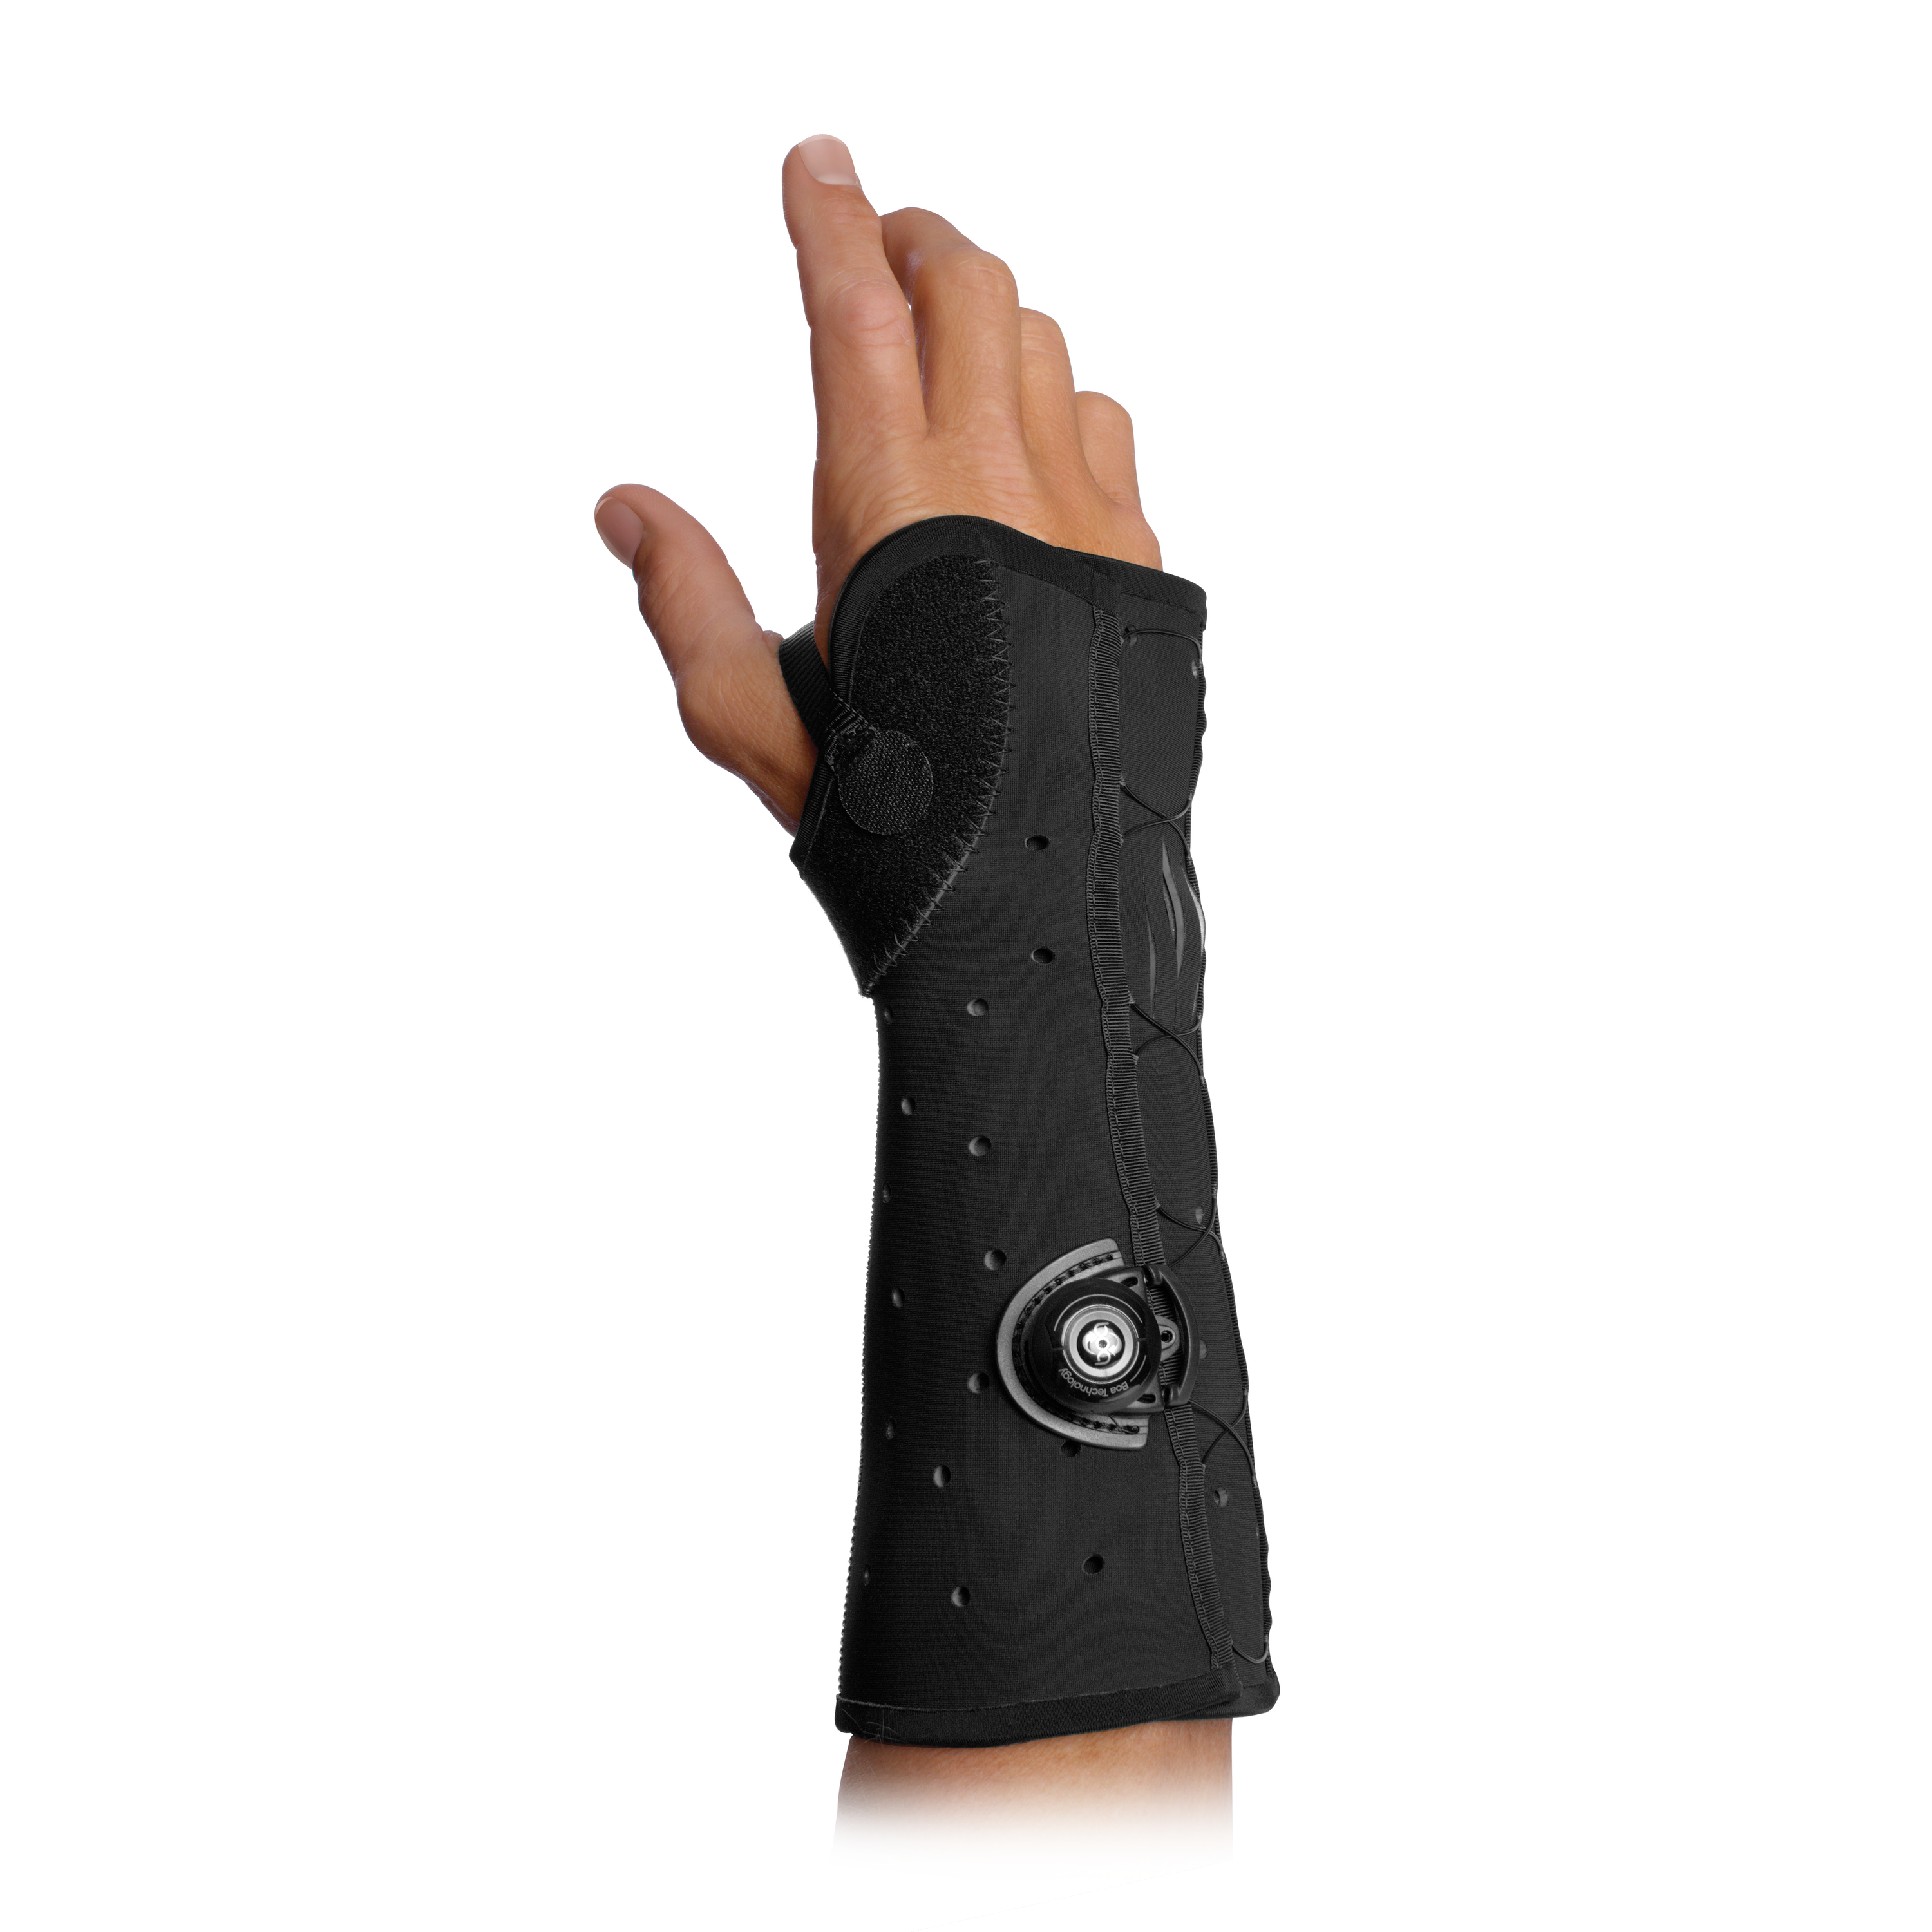 Produktbild EXOS® Hand-/ Unterarmorthese mit BOA®, offen, Thermoplastisch verformbare Hand-/Unterarmorthese zur Immobilisierung